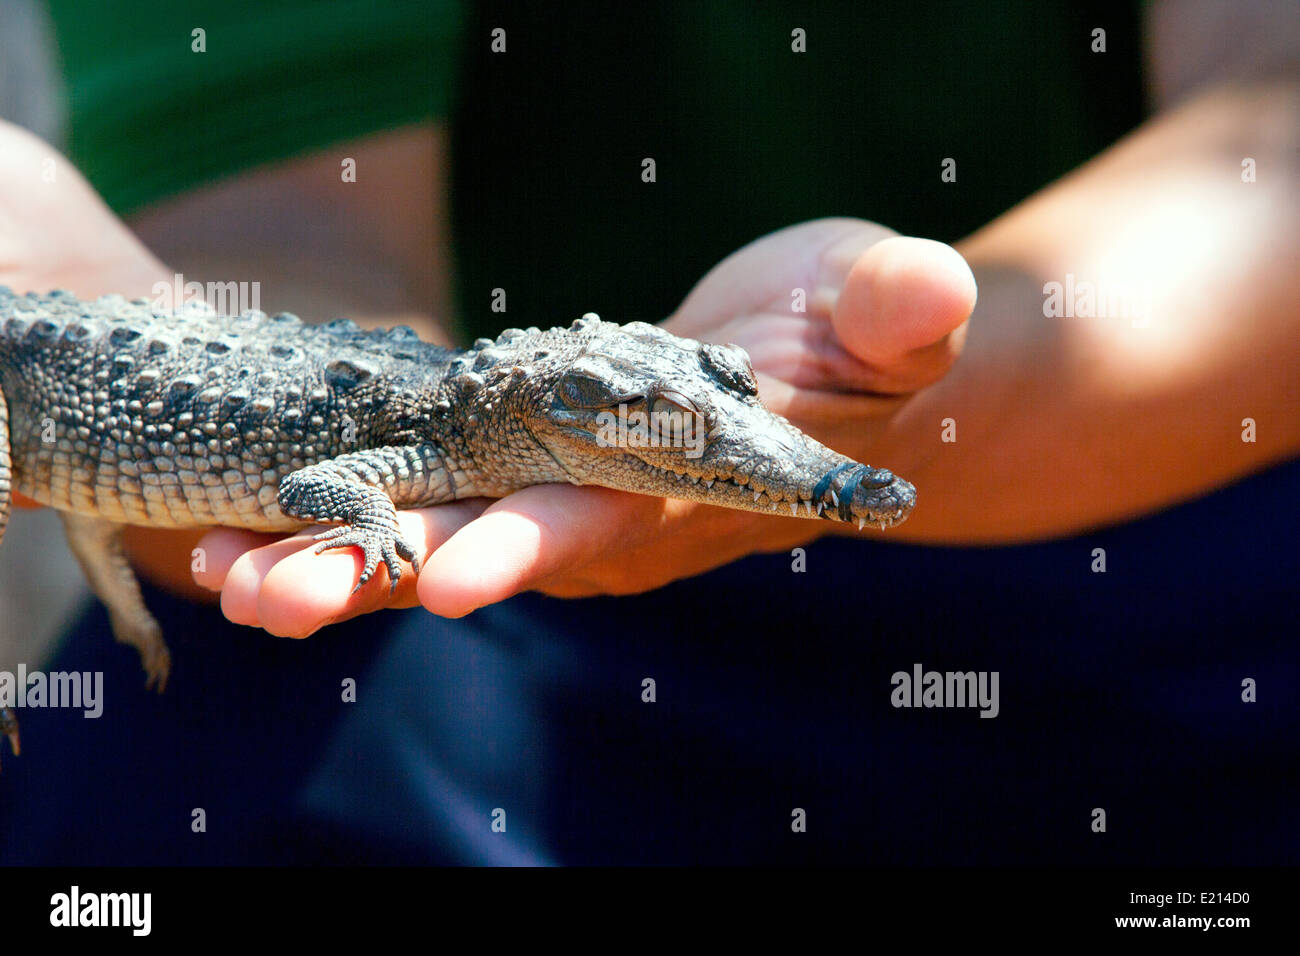 Kubanische Tourist hält ein Baby alligator Stockfoto